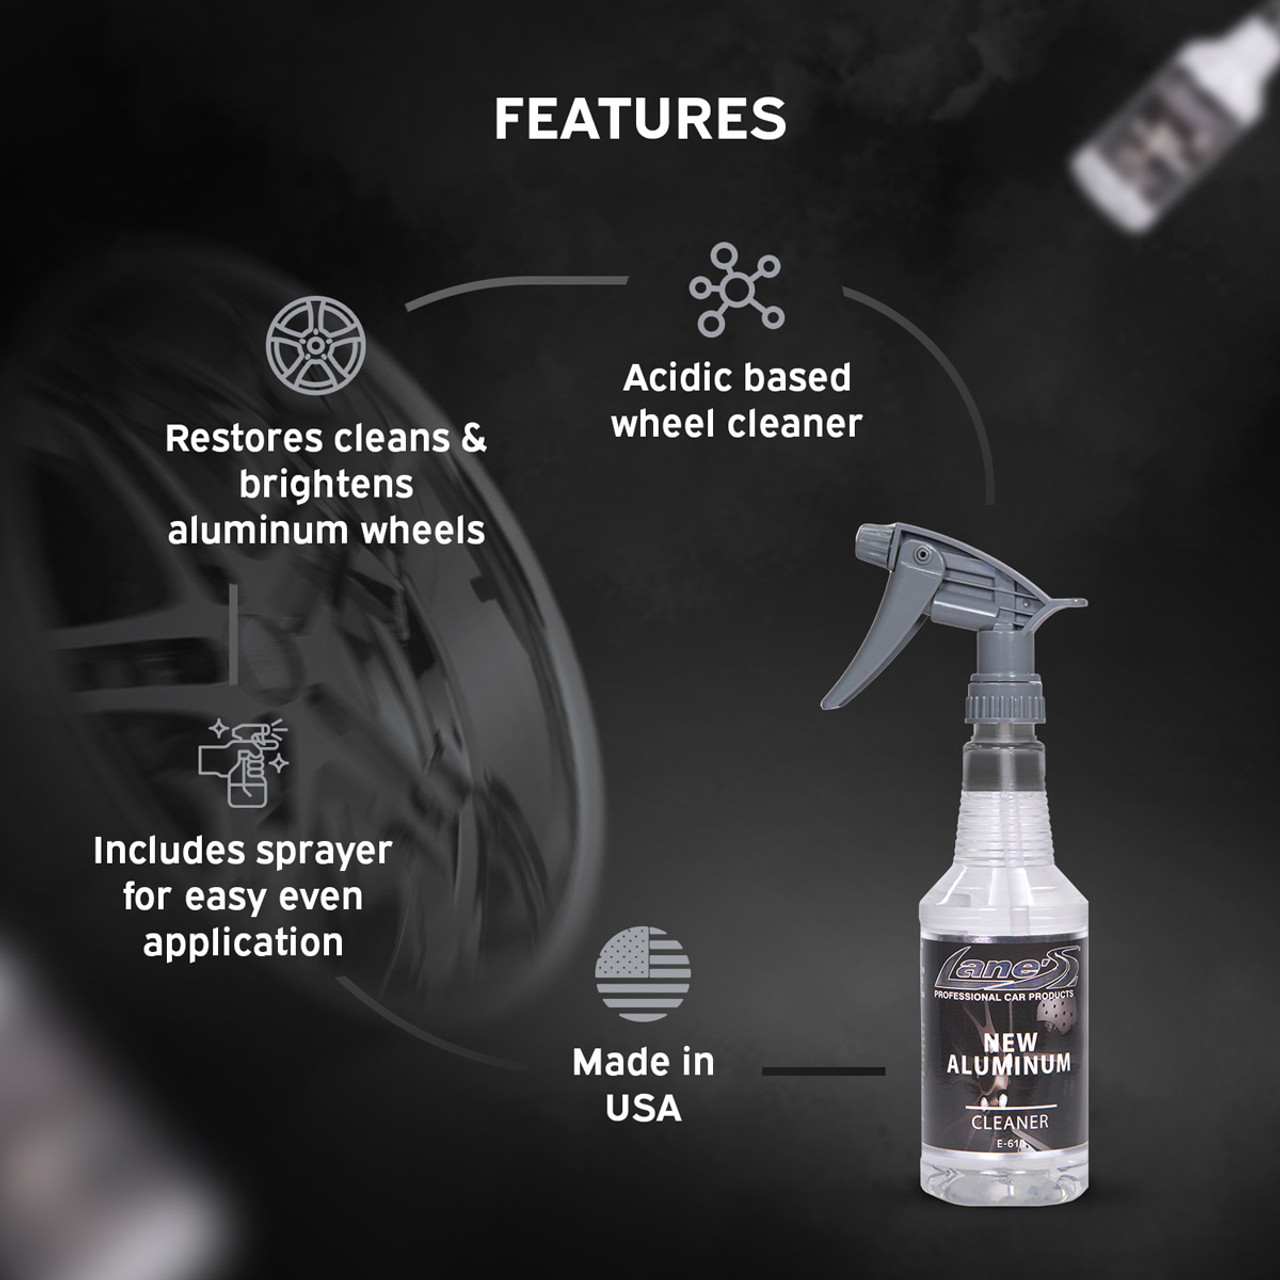 Lane's Aluminum Wheel Cleaner - Best Acidic Wheel Cleaner on the Market